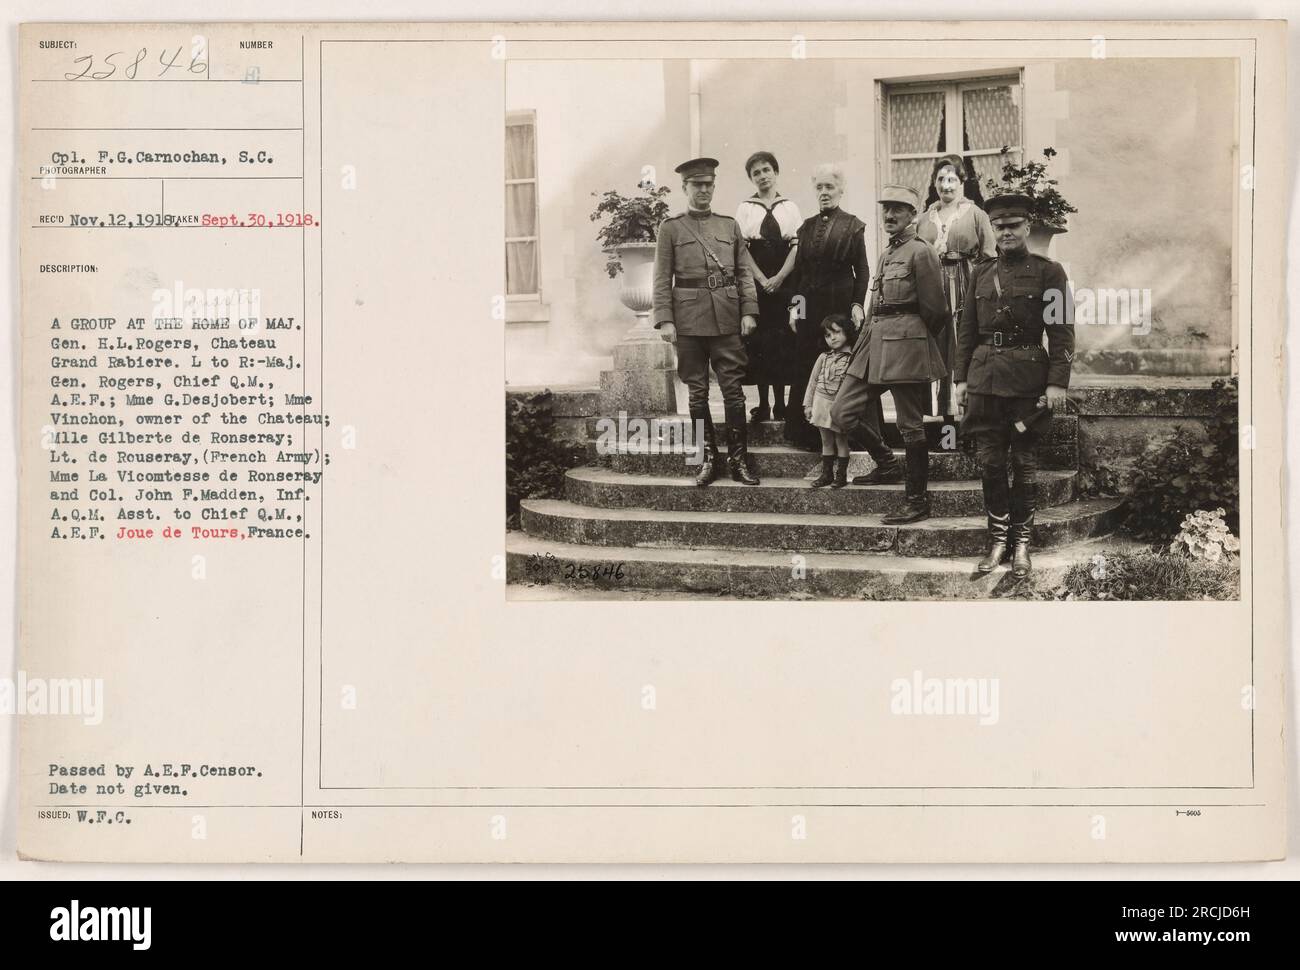 Bildunterschrift: Eine Gruppensitzung im Haus von Major General H.L. Rogers, Chateau Grand Rabiere. Von links nach rechts: Major General Rogers, Chief Q.M., A.E.F.; Madame G. Desjobert; ME Vinchon, Eigentümer des Chateau; Mademoiselle Gilberte de Ronseray; Leutnant de Rouseray, französische Armee; Madame La Vicomtesse de Ronseray; und Colonel John P. Madden, Inf. A.Q.M. Asst. An Chief Q.M., A.E.F. Joue de Tours, Frankreich. Datum nicht angegeben. Stockfoto